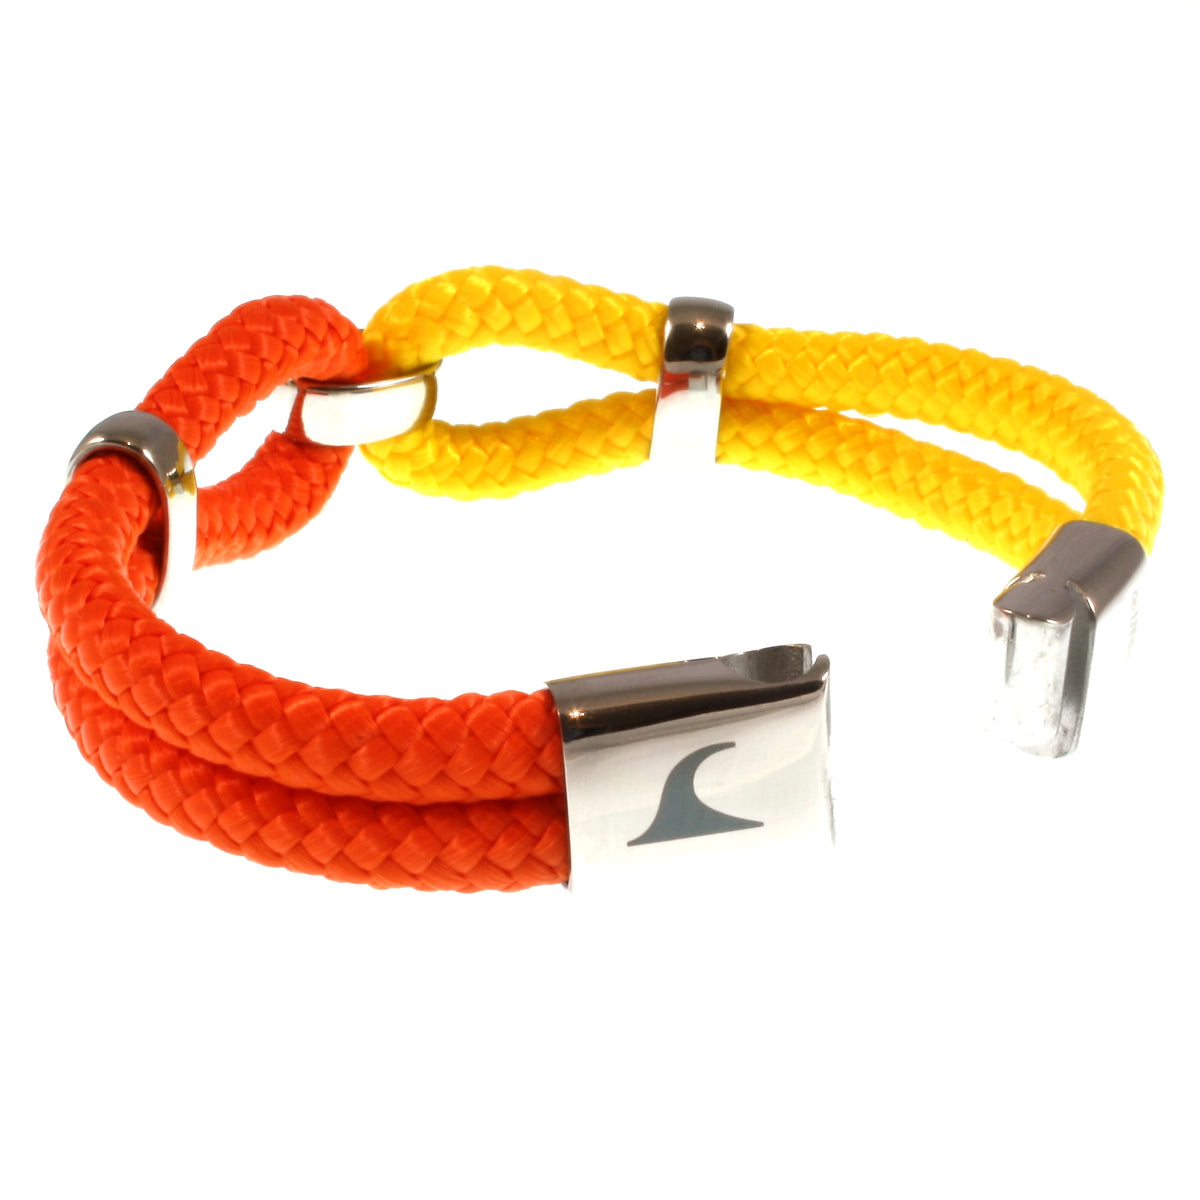 Damen-Segeltau-armband-roma-gelb-orange-geflochten-Edelstahlverschluss-offen-wavepirate-shop-st